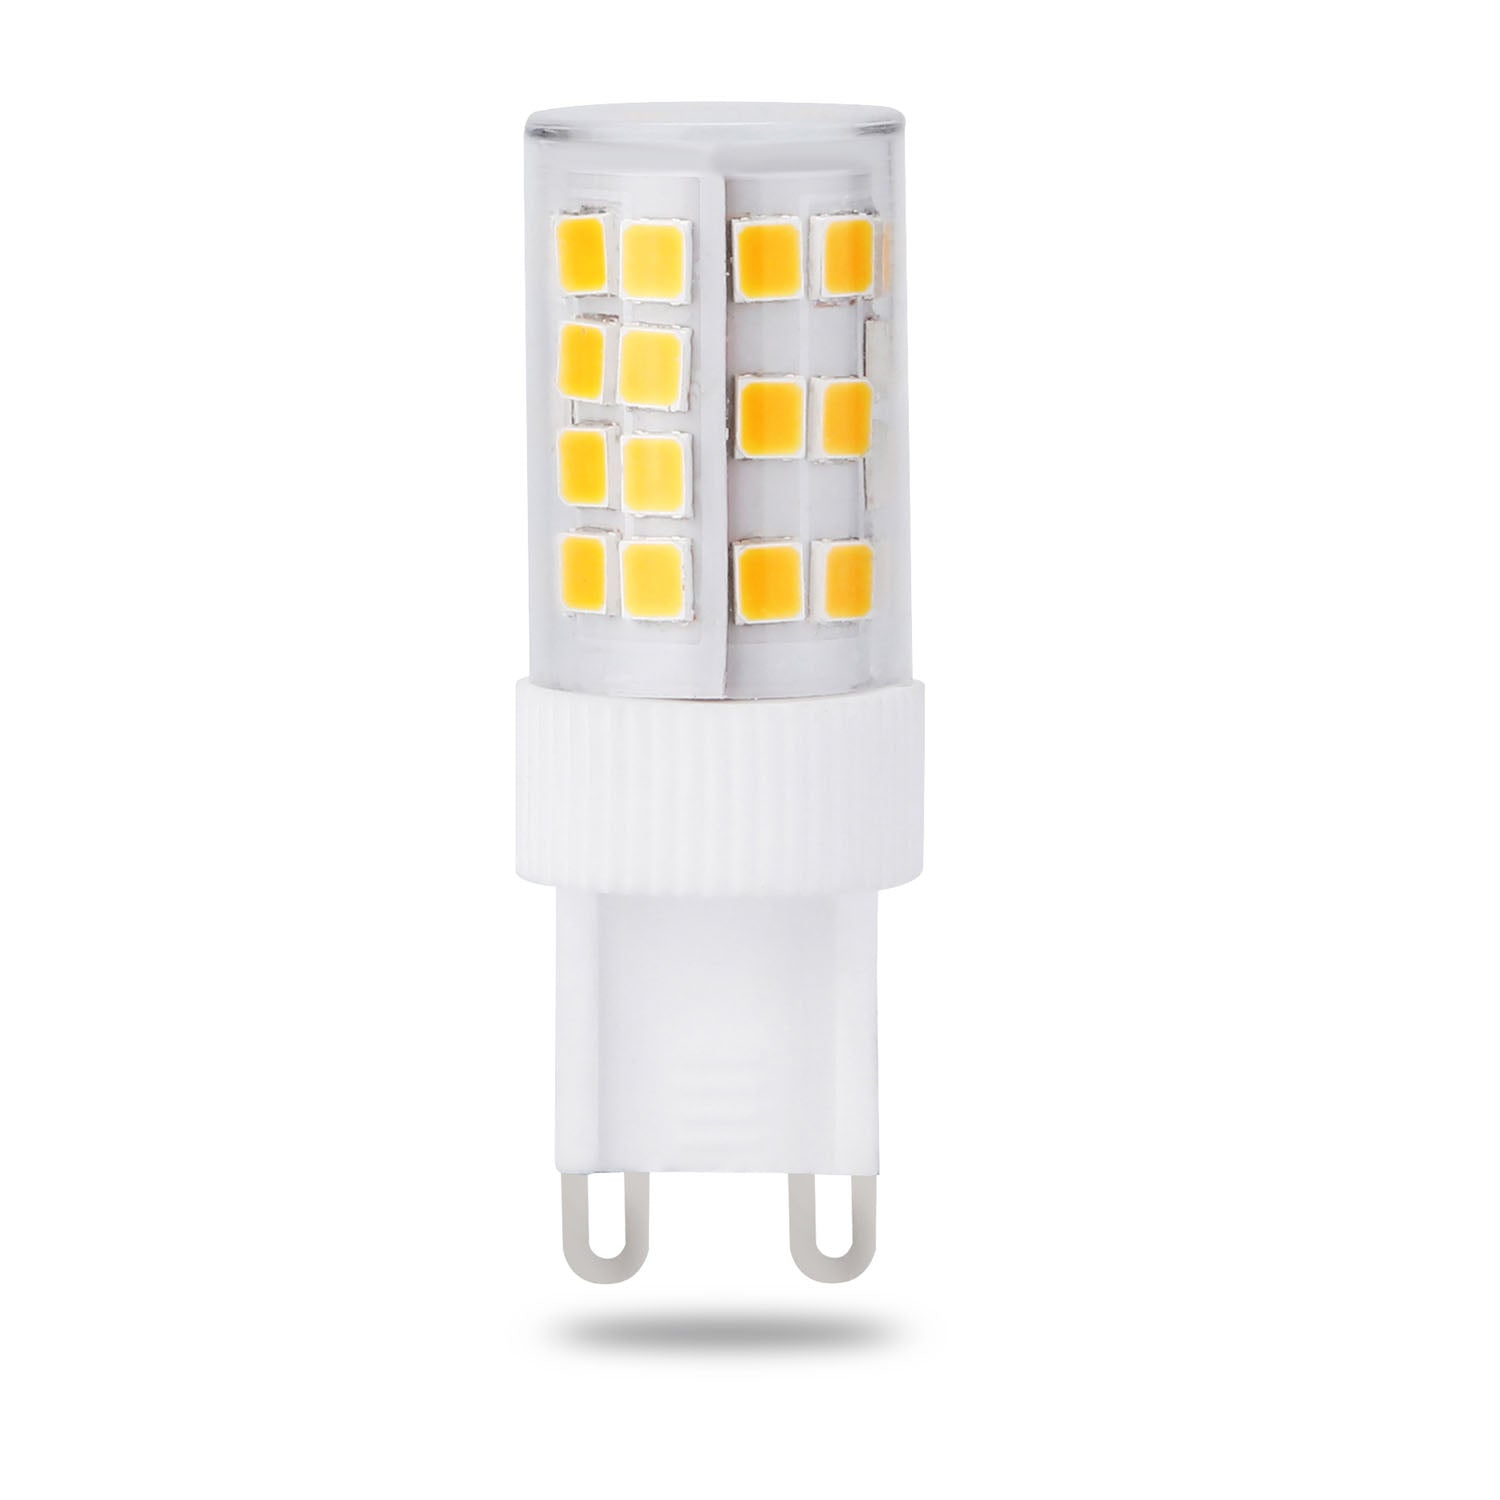 LED G9 Lamp - Daylight White